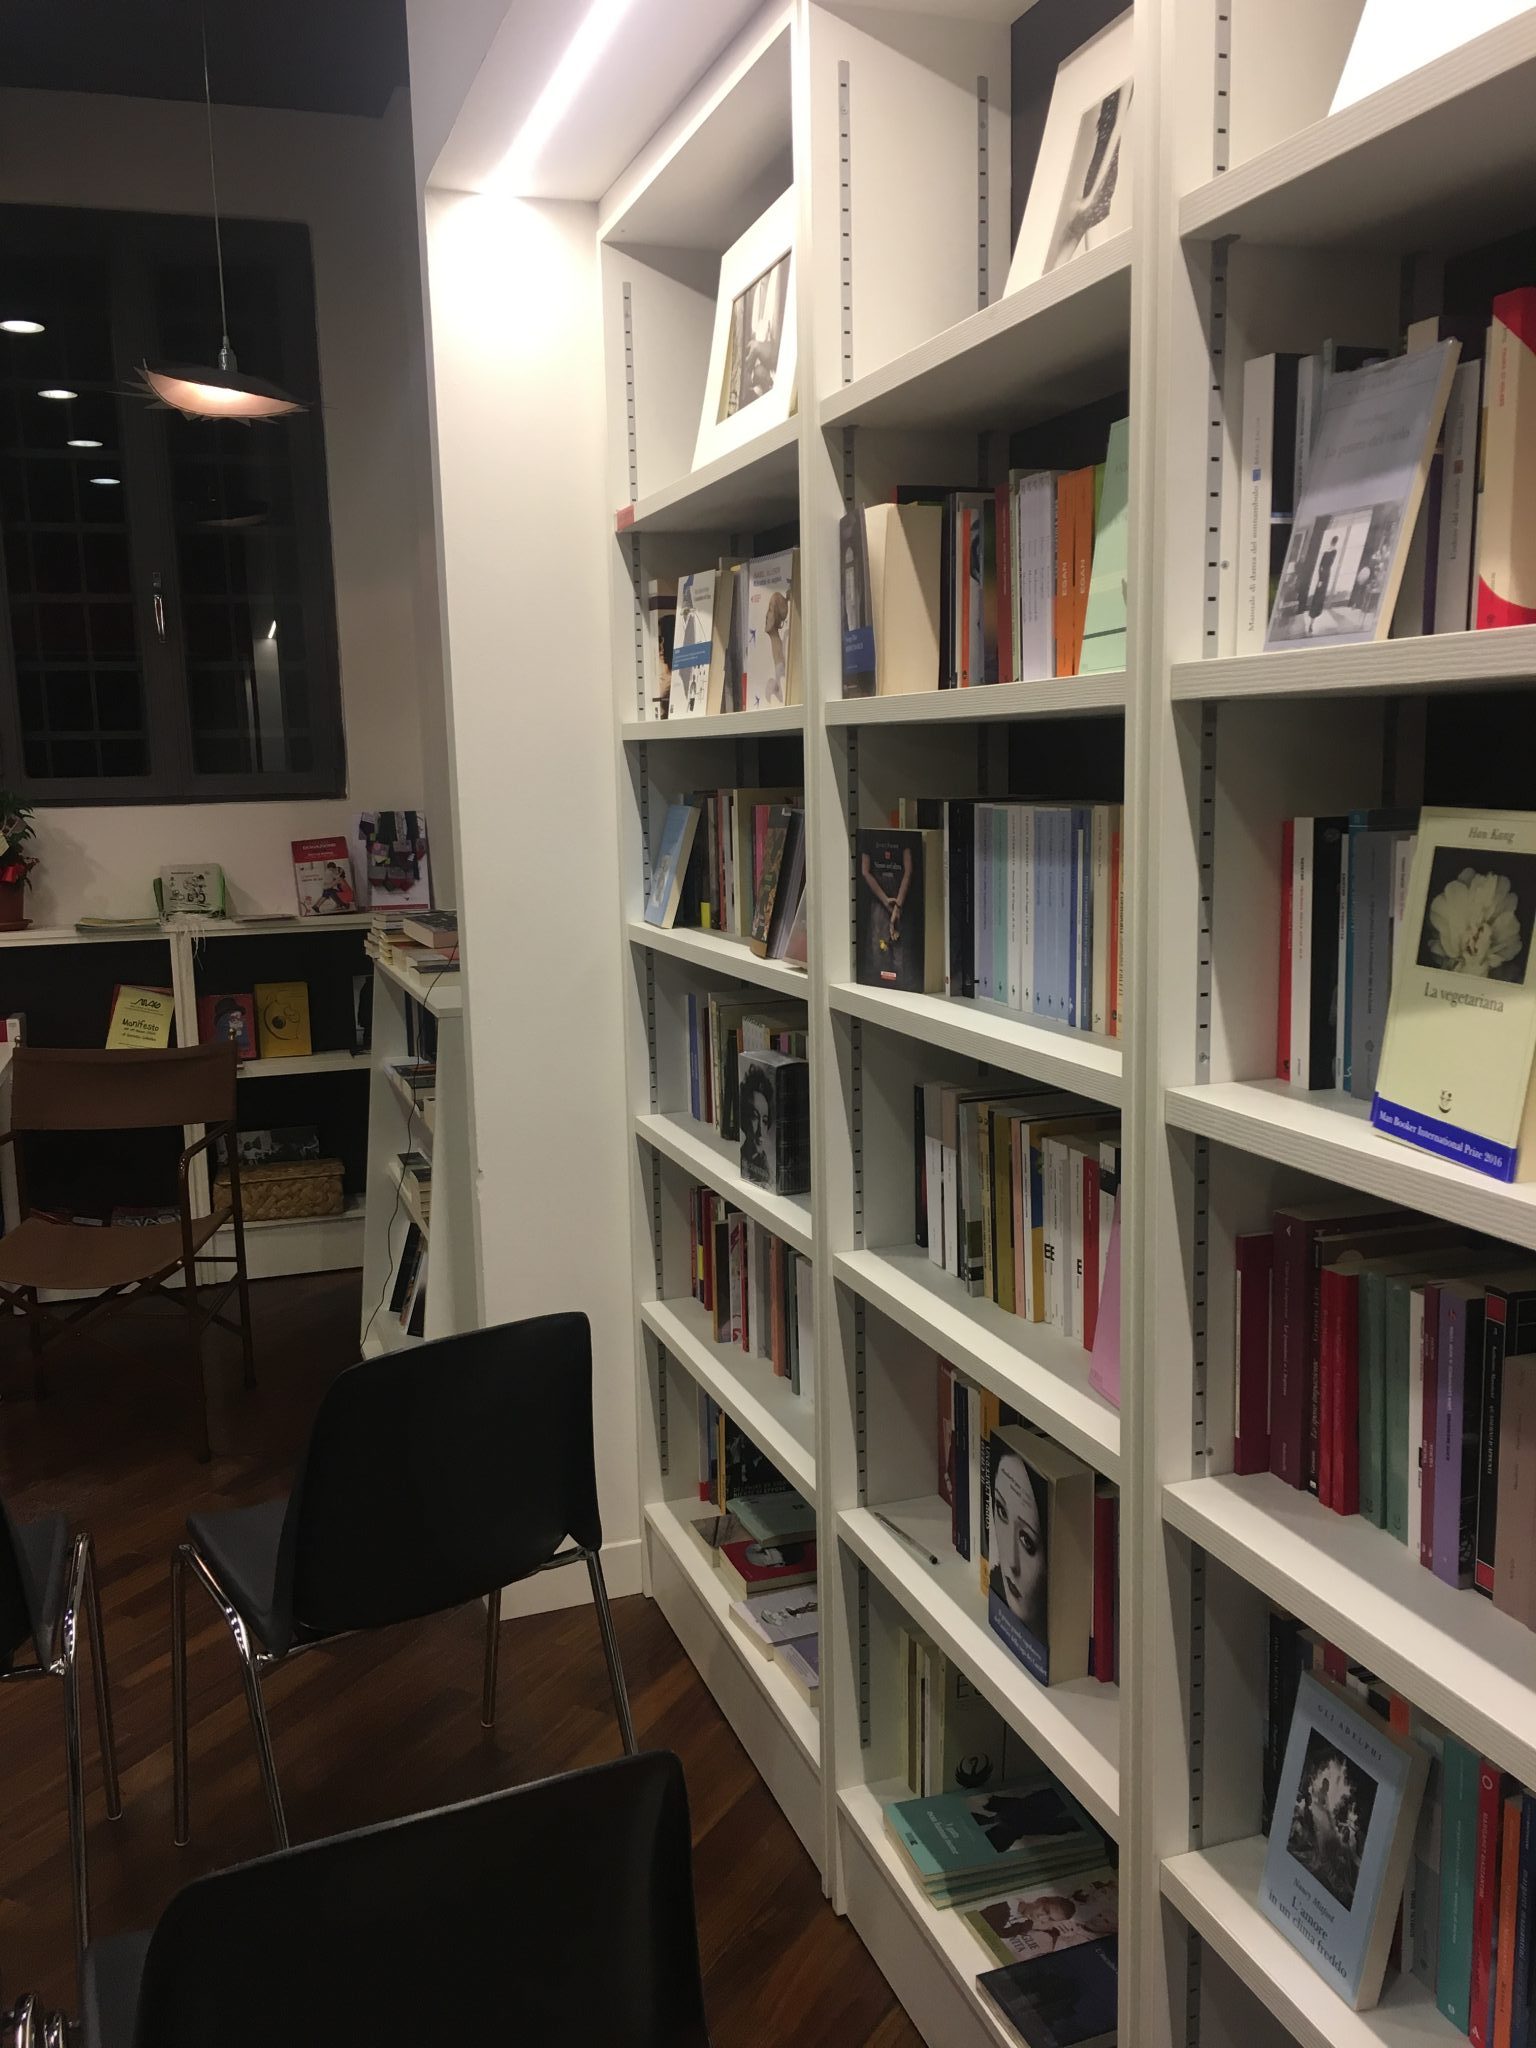 Tre librerie speciali a Padova, dove trascorrere al caldo un pomeriggio d'inverno: La libreria Antiquaria Stella, La libreria delle donne e Laformadellibro.